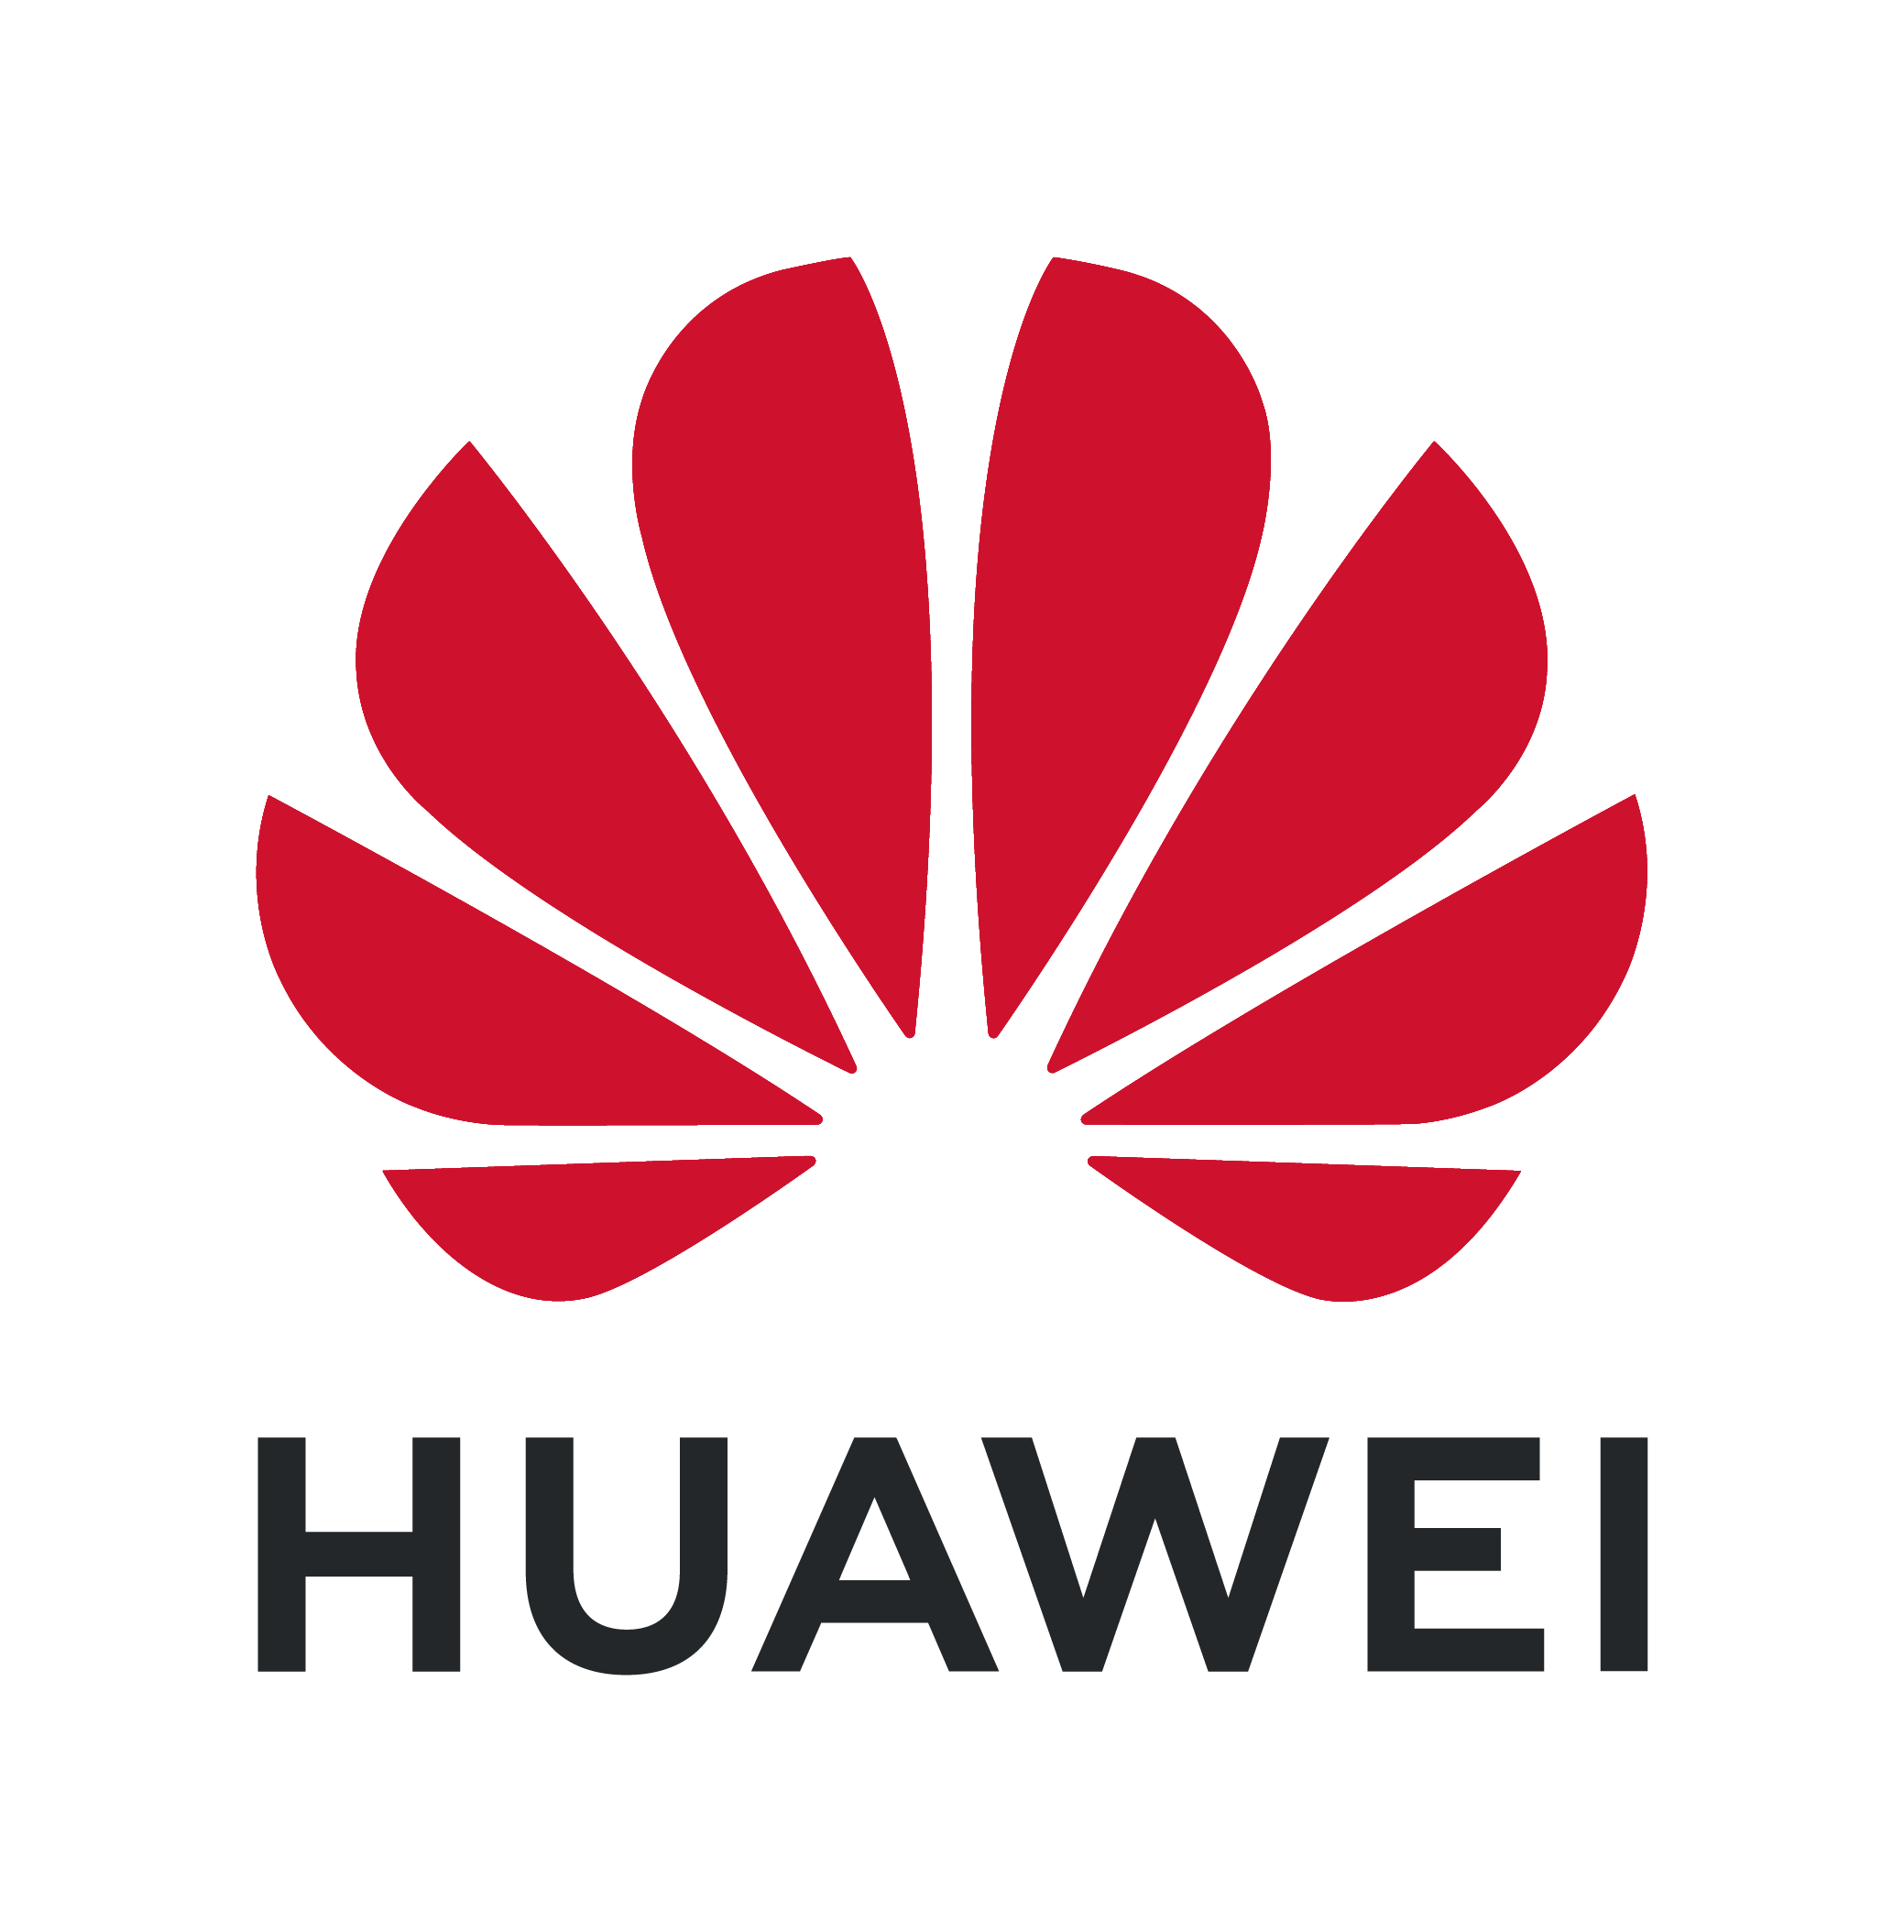 رقم قياسي جديد تحققه Huawei خلال العام 2018 بيع 200 مليون وحدة وأكثر في عام!